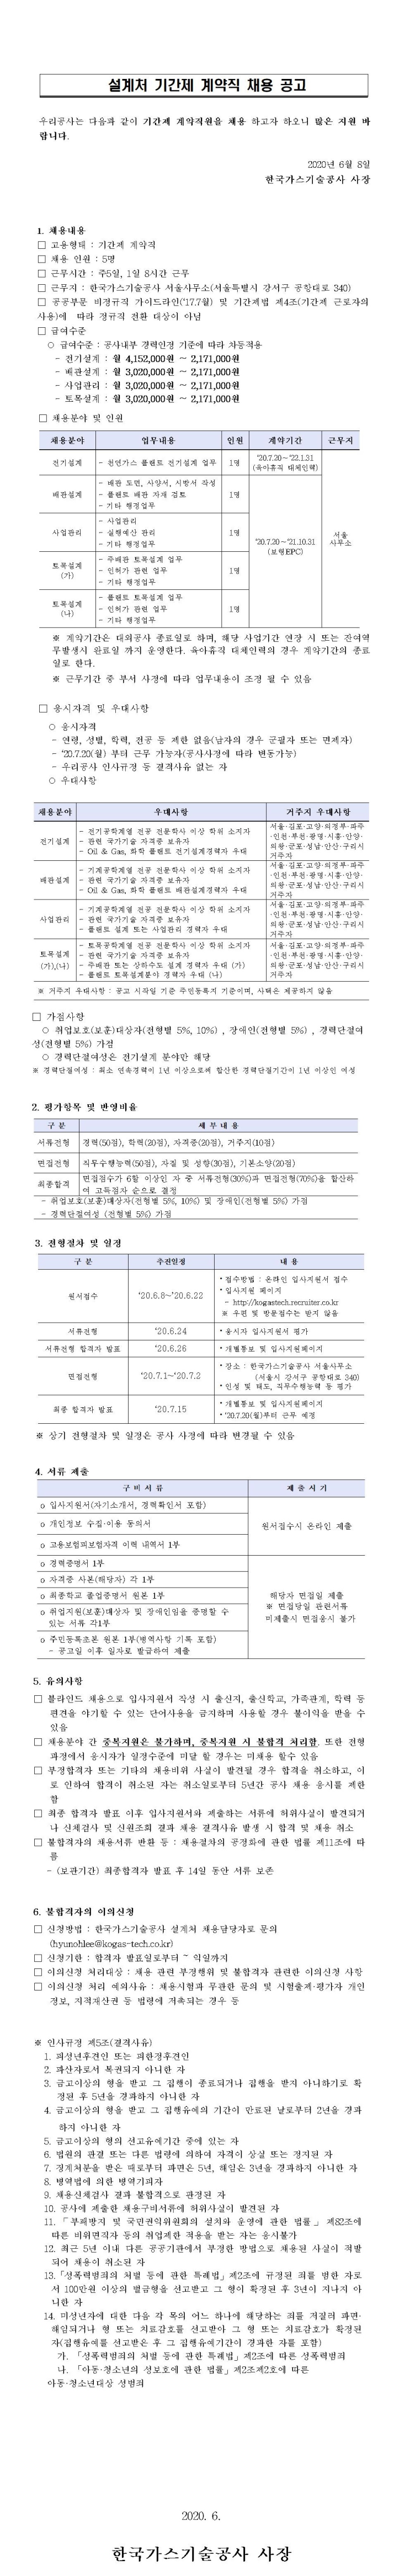 [채용][한국가스기술공사] 설계처 기간제 계약직 채용 공고